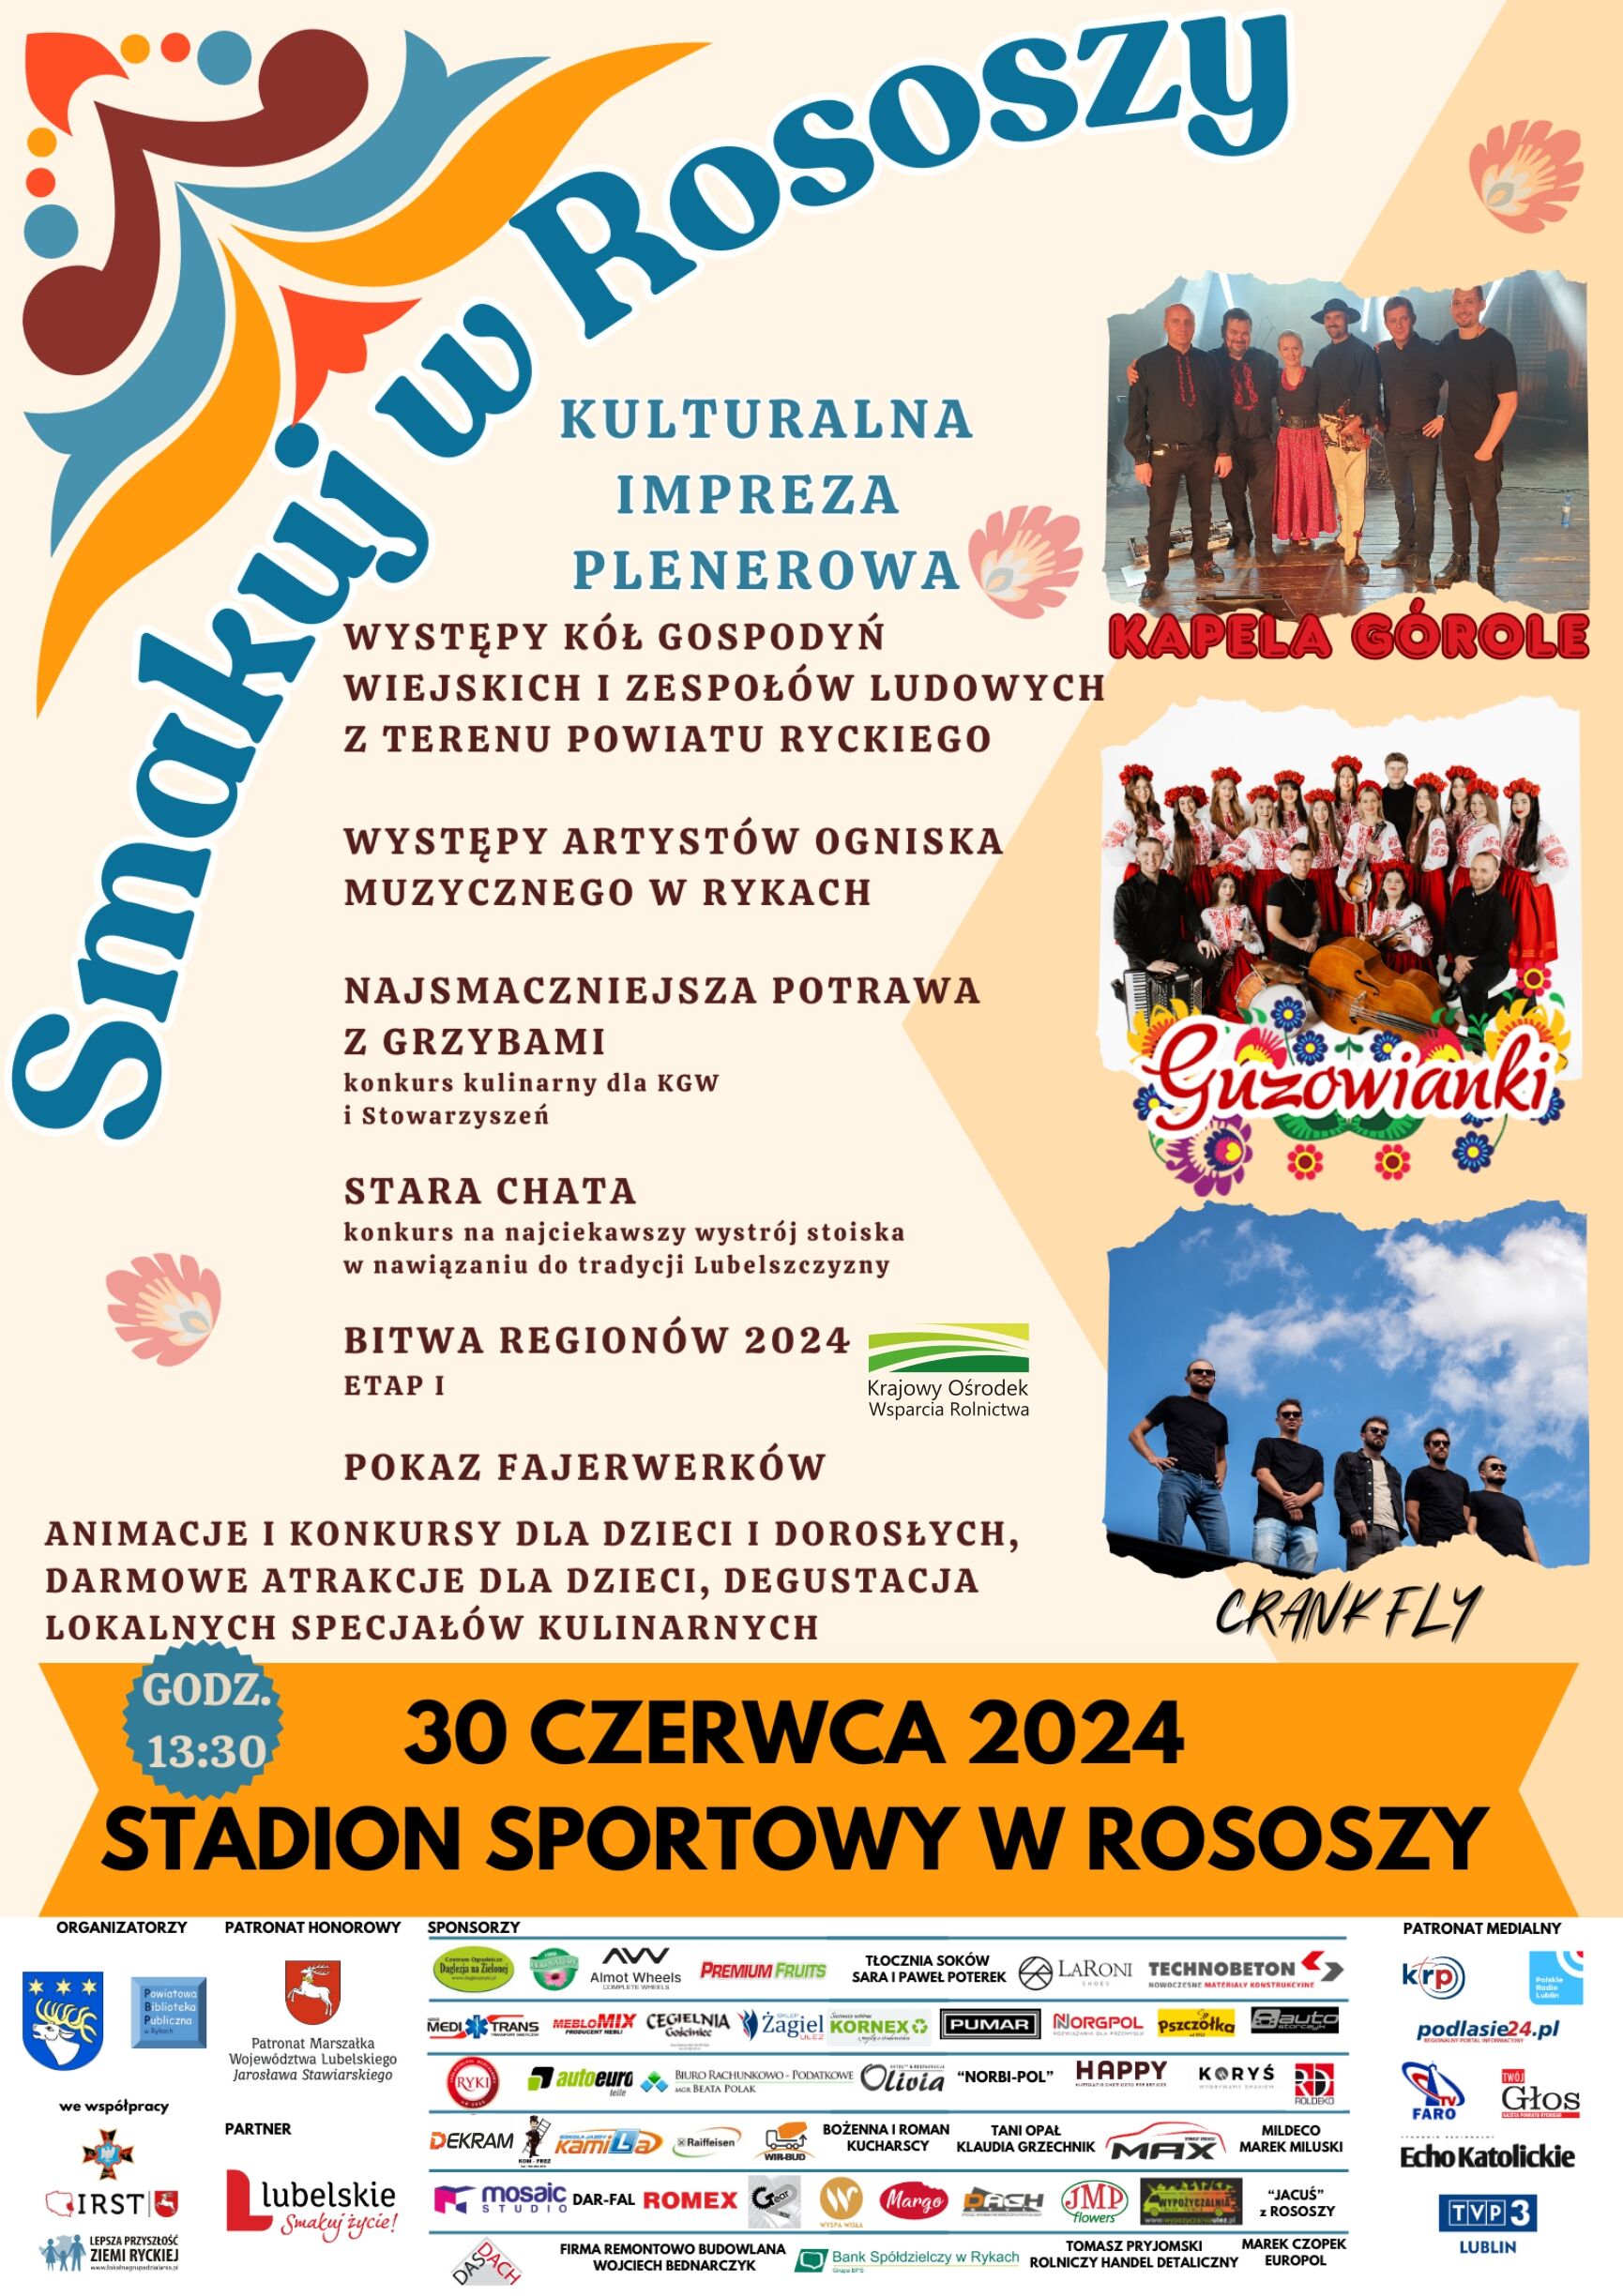 Plakat wydarzenia "Smaki i Kultura w Rososzy" z grafikami tańczących osób i potraw, zawiera informacje o występach, stoiskach kulinarowych, grach i konkursach. Na górze zdjęcie zespołu muzycznego.